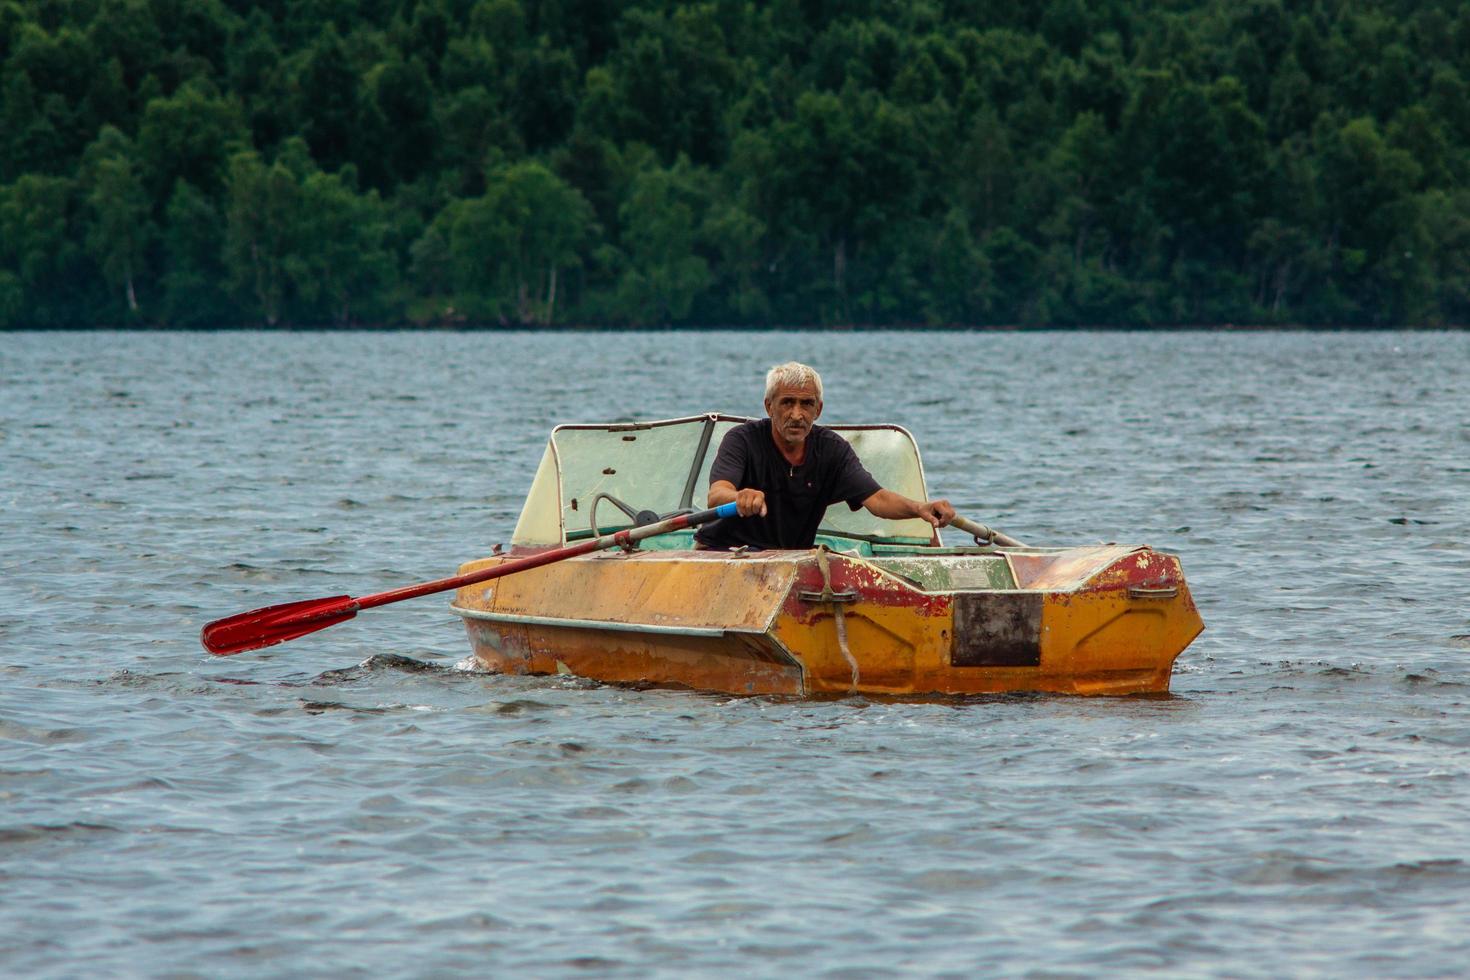 República da Carélia, Rússia - 2 de julho de 2013, velho homem bronzeado grisalho navegando no barco com remos no lago da Carélia. foto